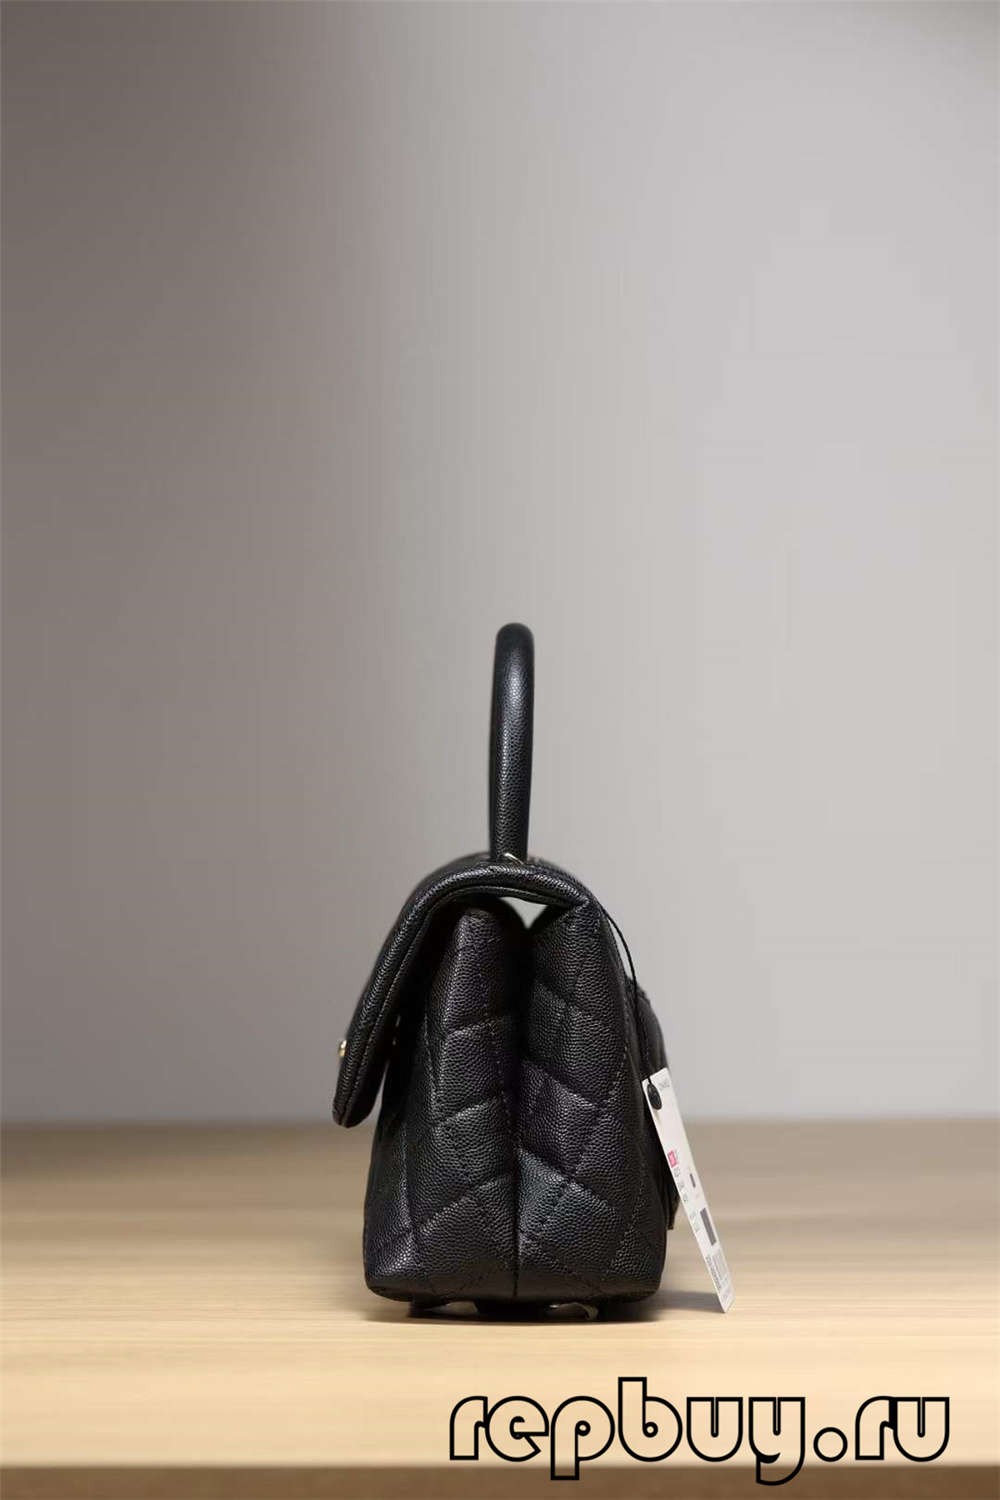 Chanel Coco Handle Top Replica Handbag Black Gold Buckle Look (2022 Nohavaozina)-Fivarotana an-tserasera hosoka Louis Vuitton Bag tsara indrindra, kitapo mpanamboatra replika ru